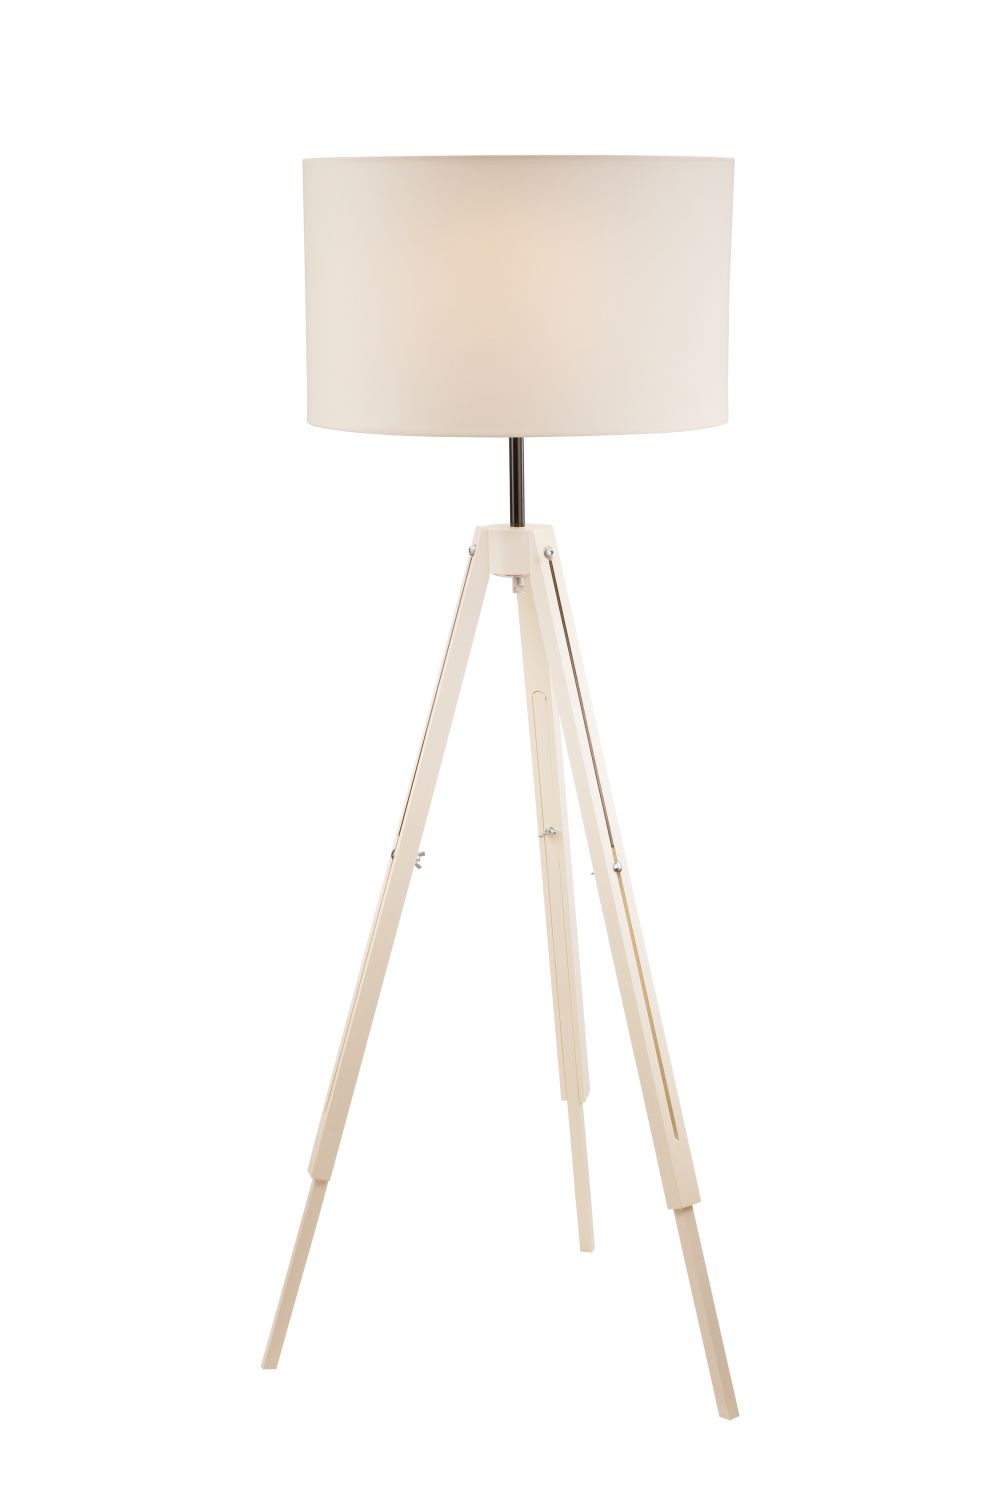 Stehlampe Creme Holz 110cm Wohnzimmer verstellbar